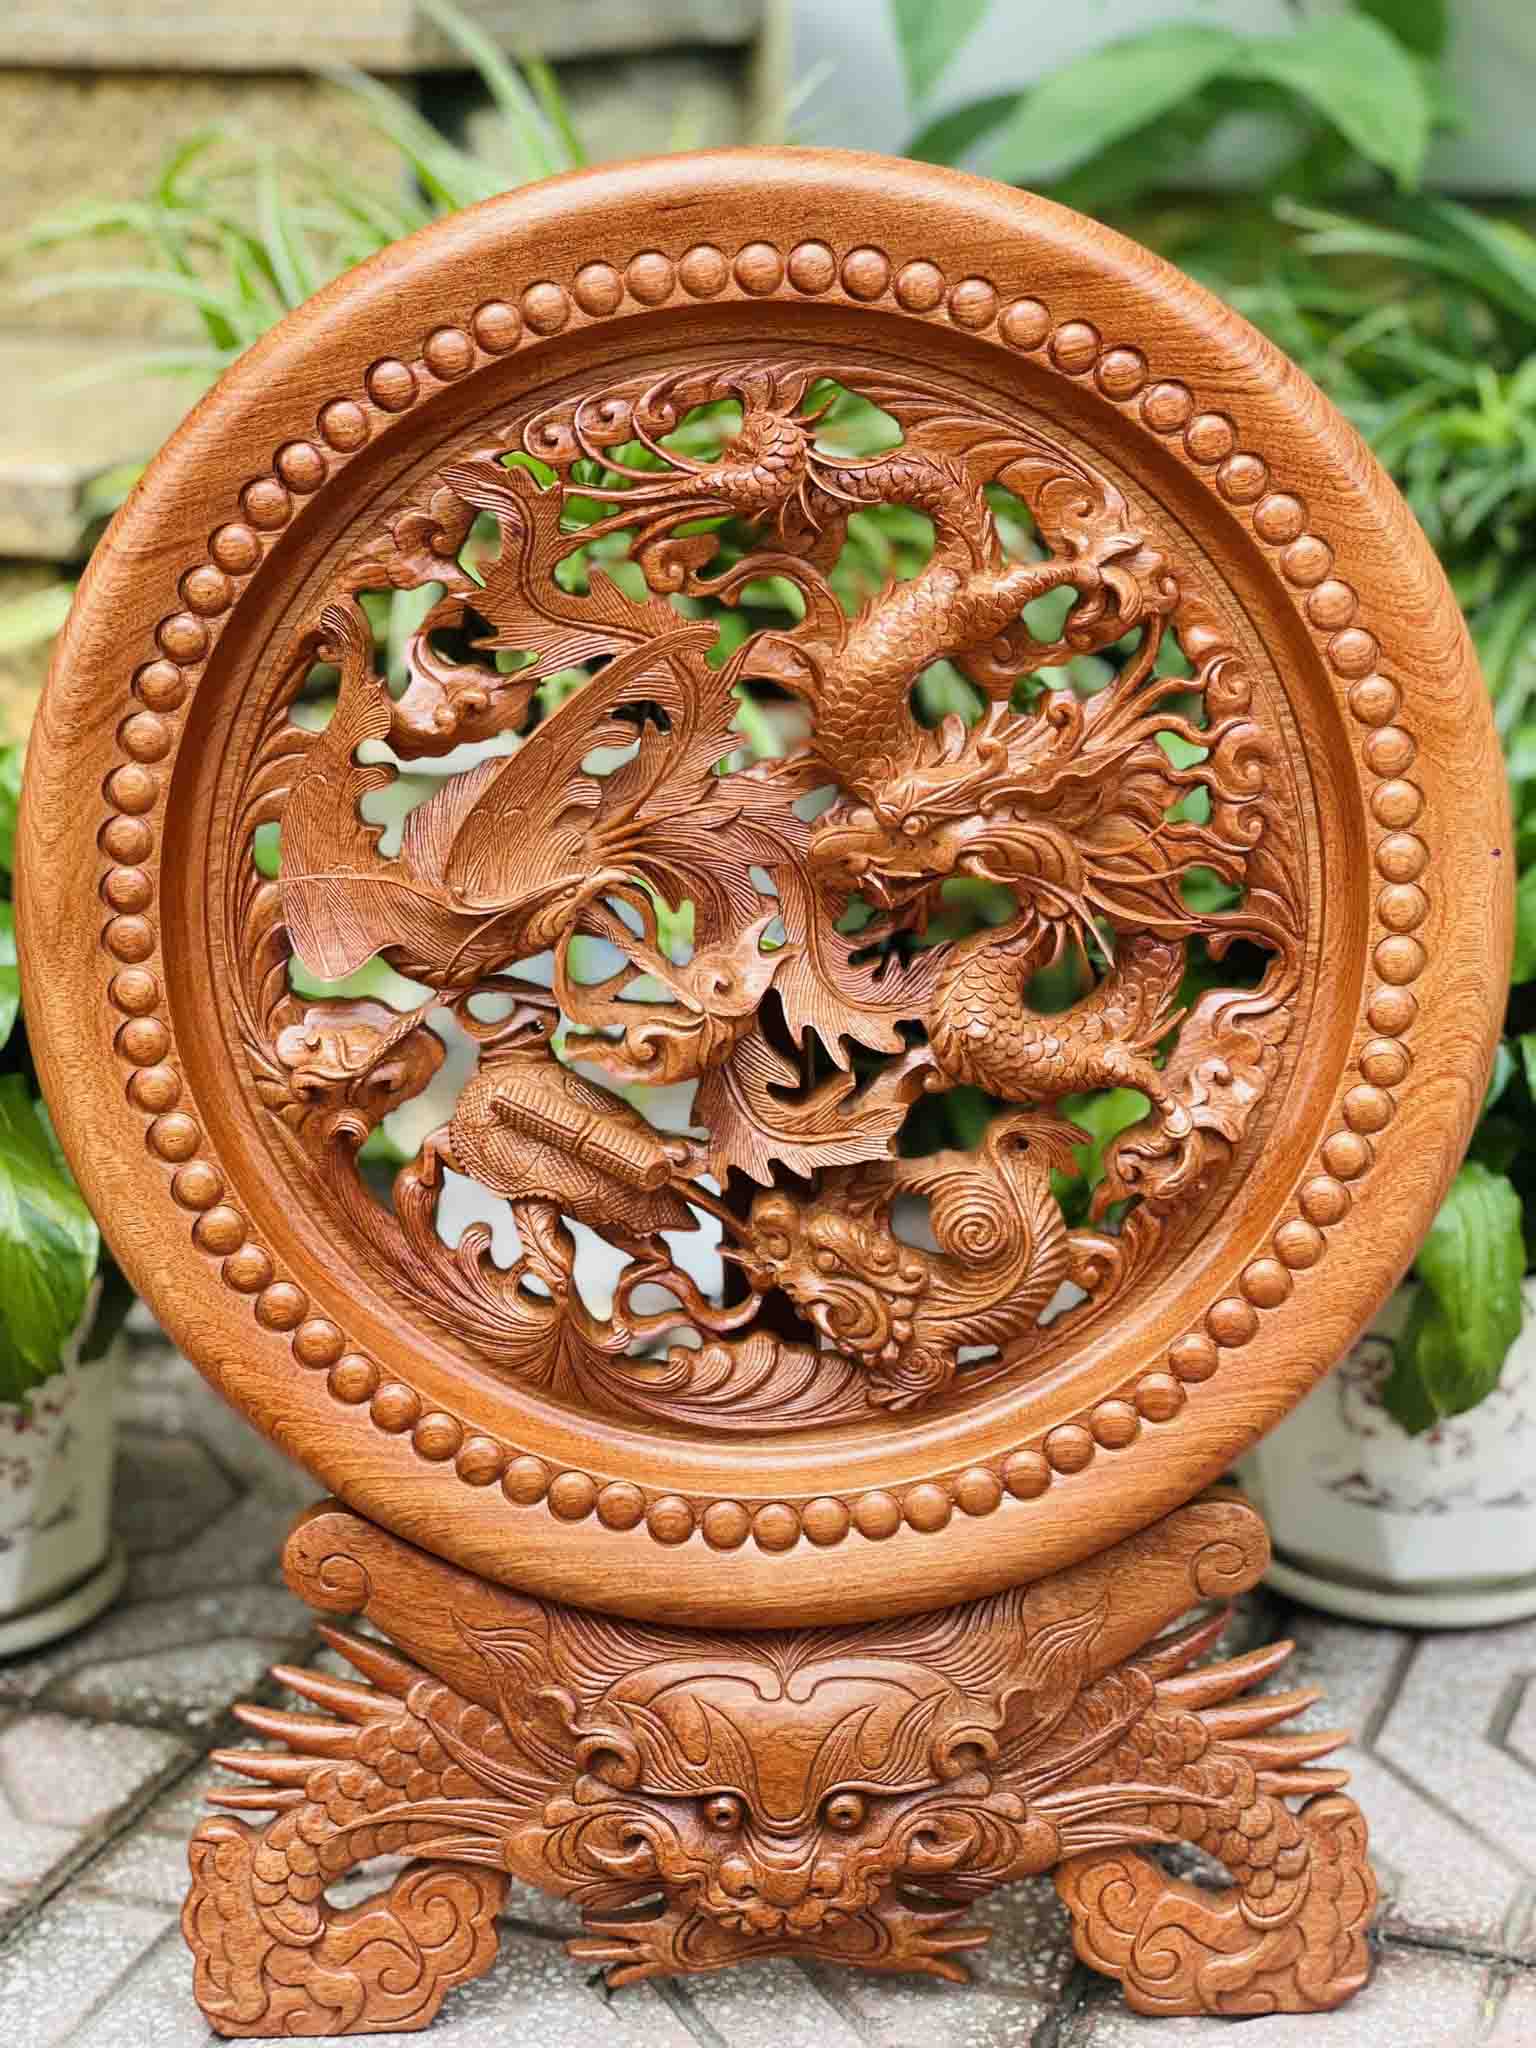 Sản phẩm tranh gỗ được cung cấp bởi Đồ gỗ Toàn Đào